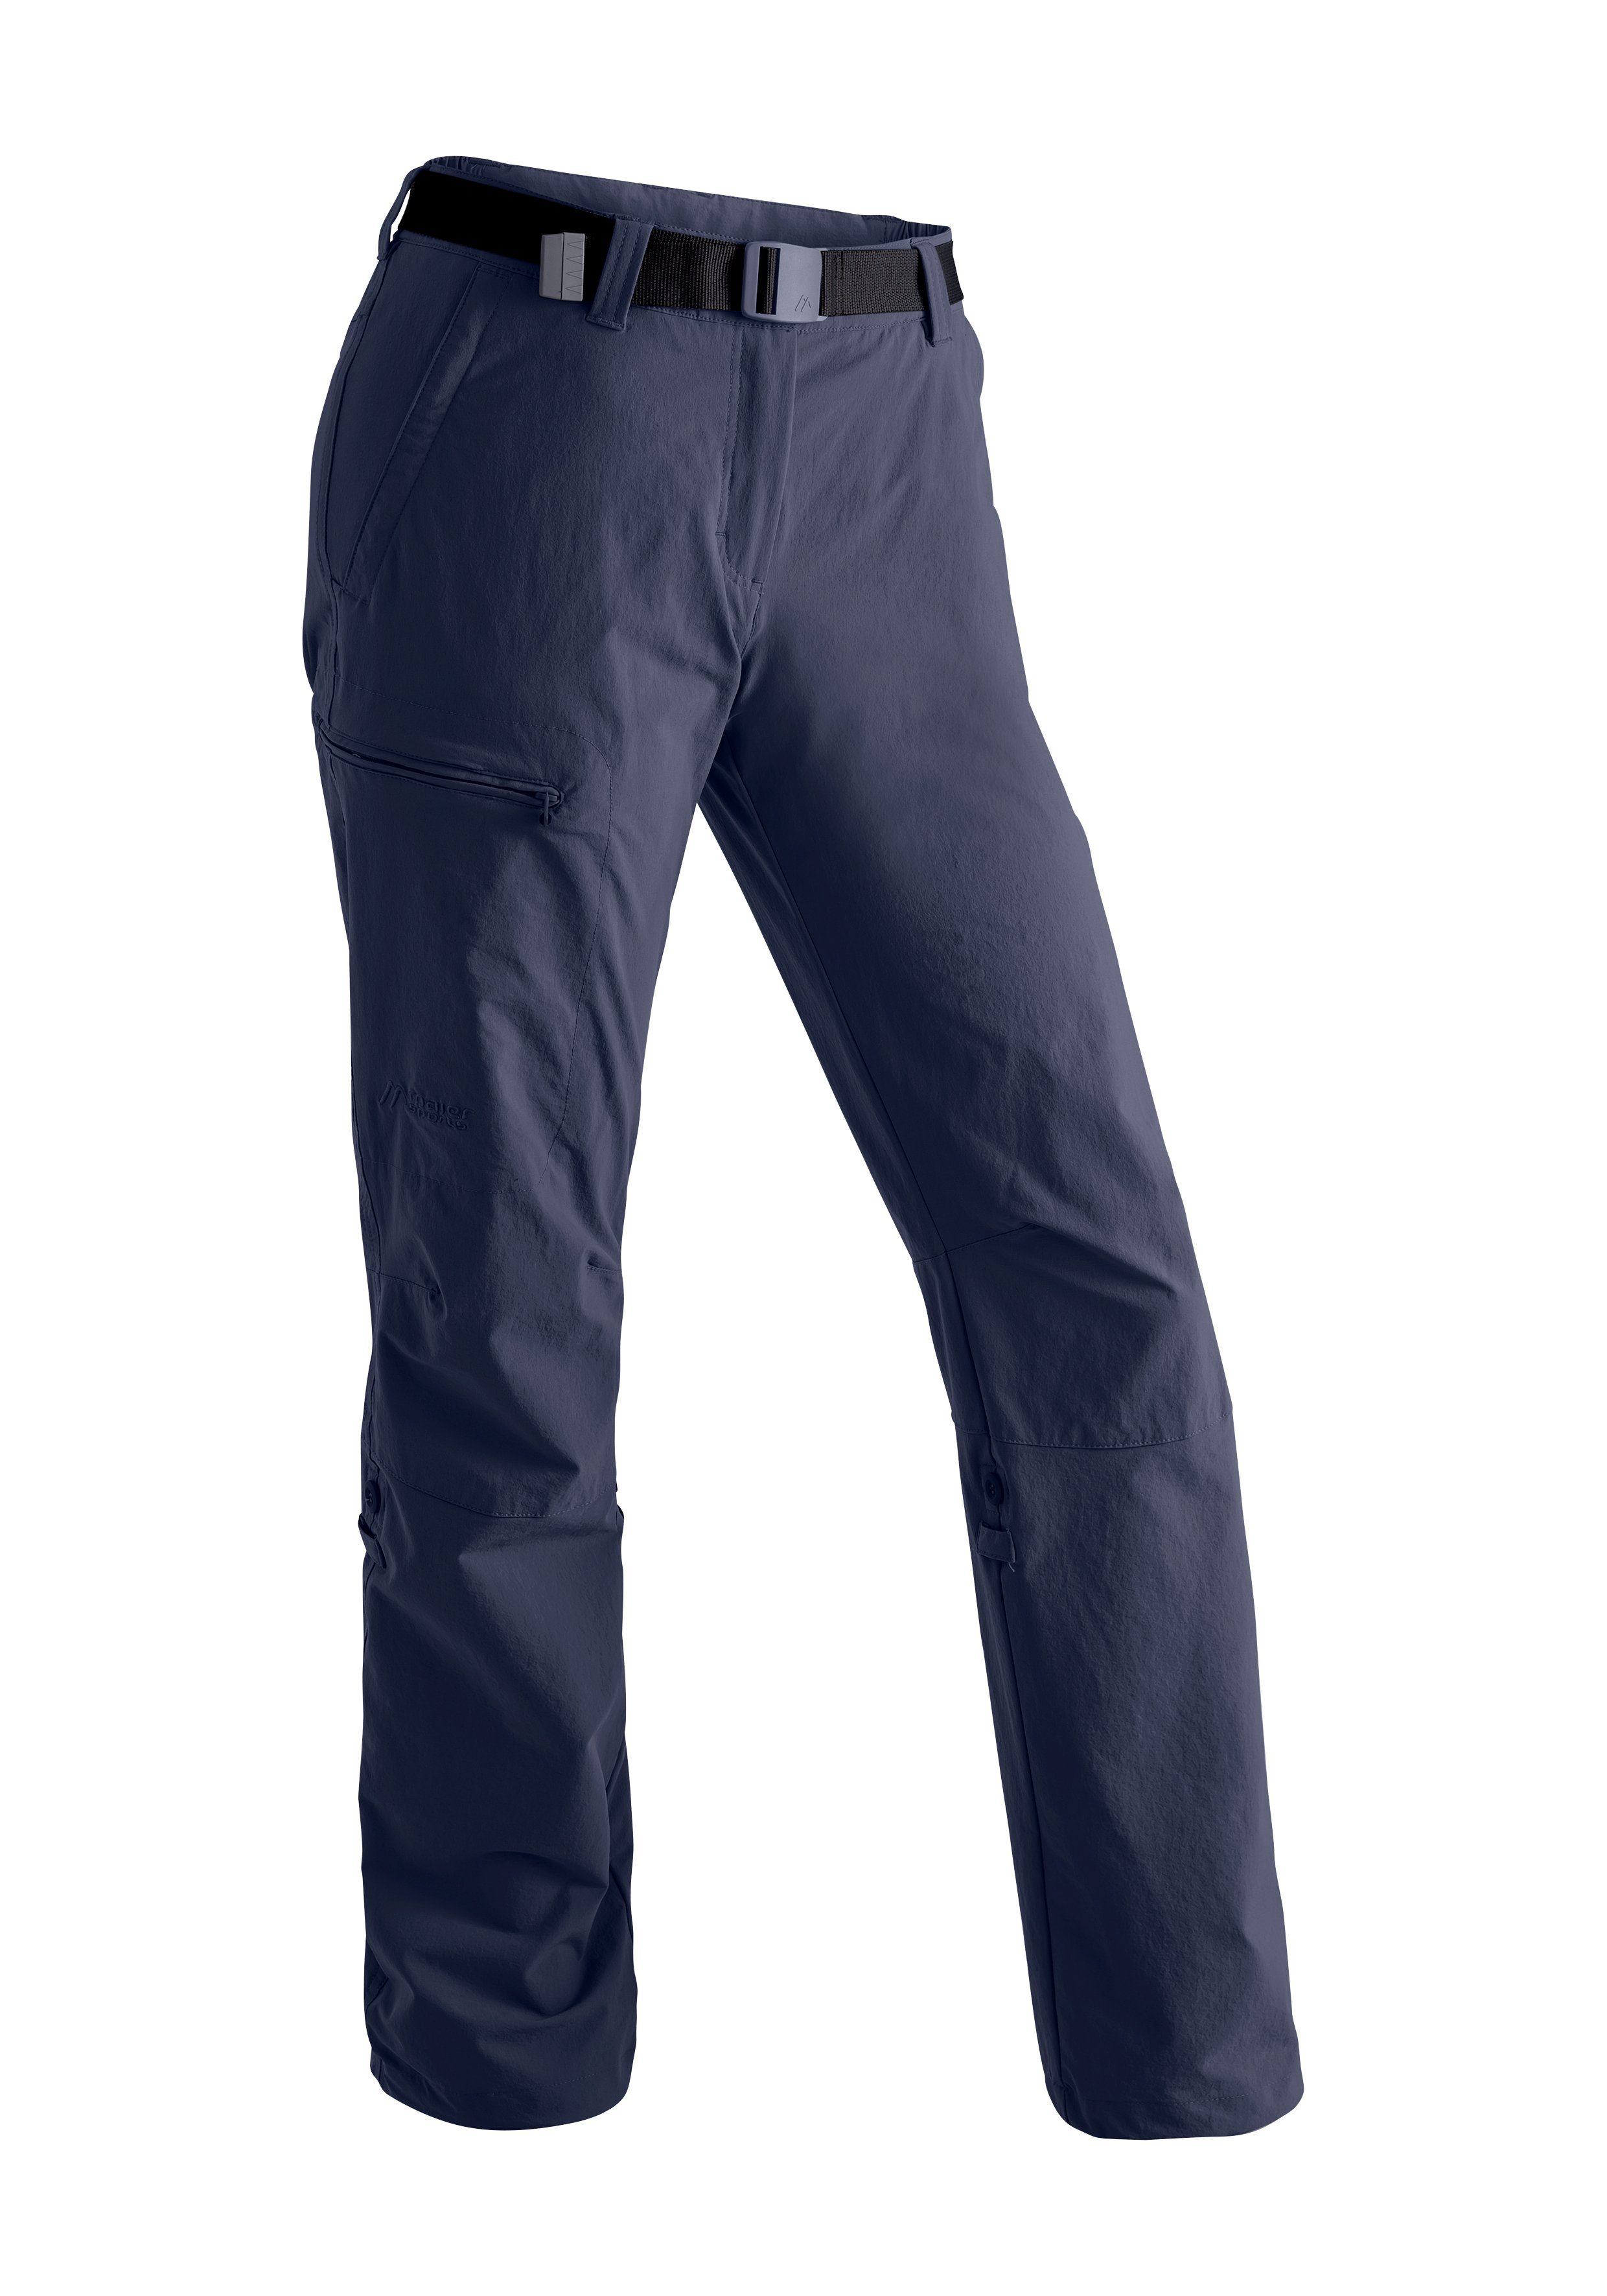 Maier Sports Funktionshose Lulaka Damen Wanderhose, atmungsaktive Outdoor-Hose mit Roll up Funktion blau | Outdoorhosen